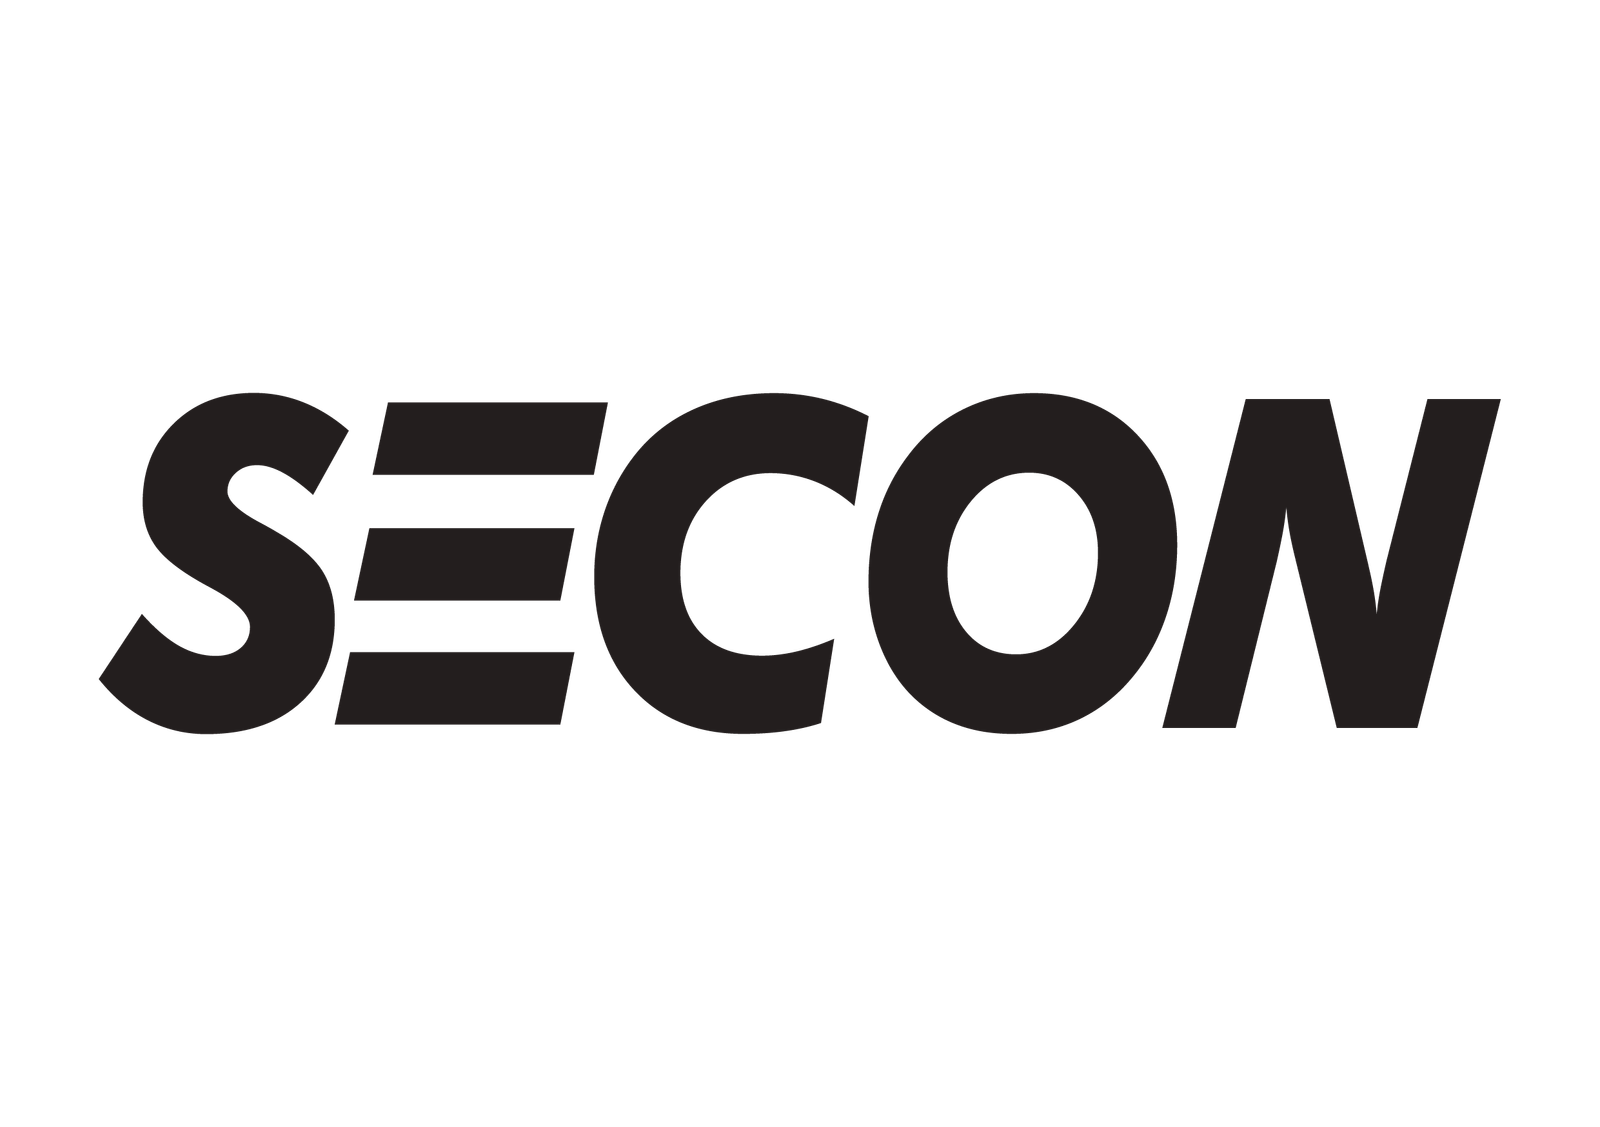 Logo_Secon-Preto